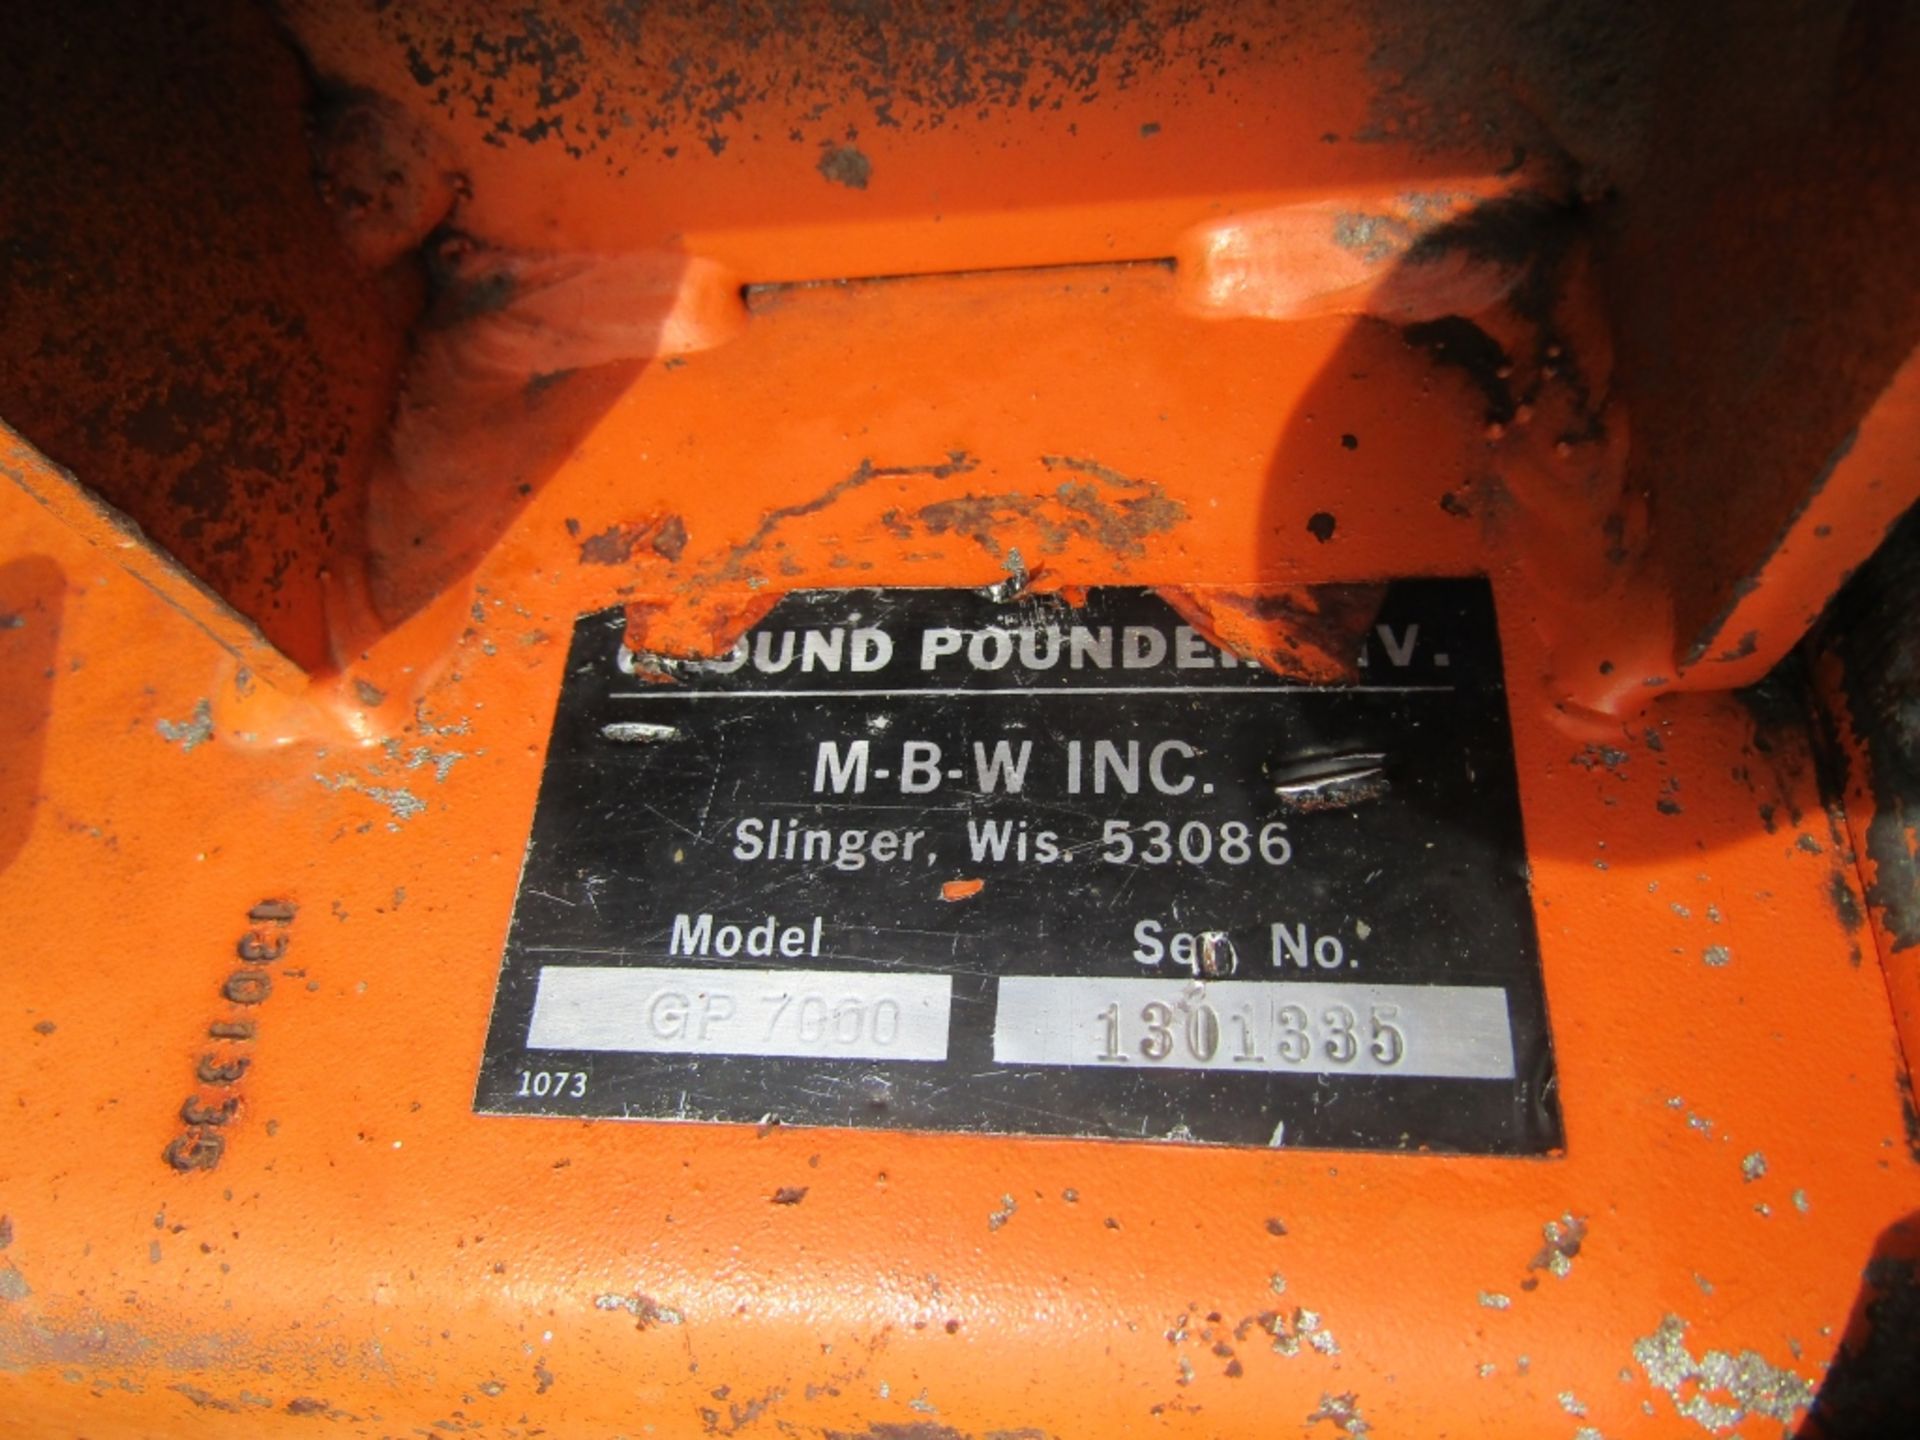 M-B-W Ground Pounder, Model GP7000, Serial #1301335, Kohler Motor, - Image 3 of 5